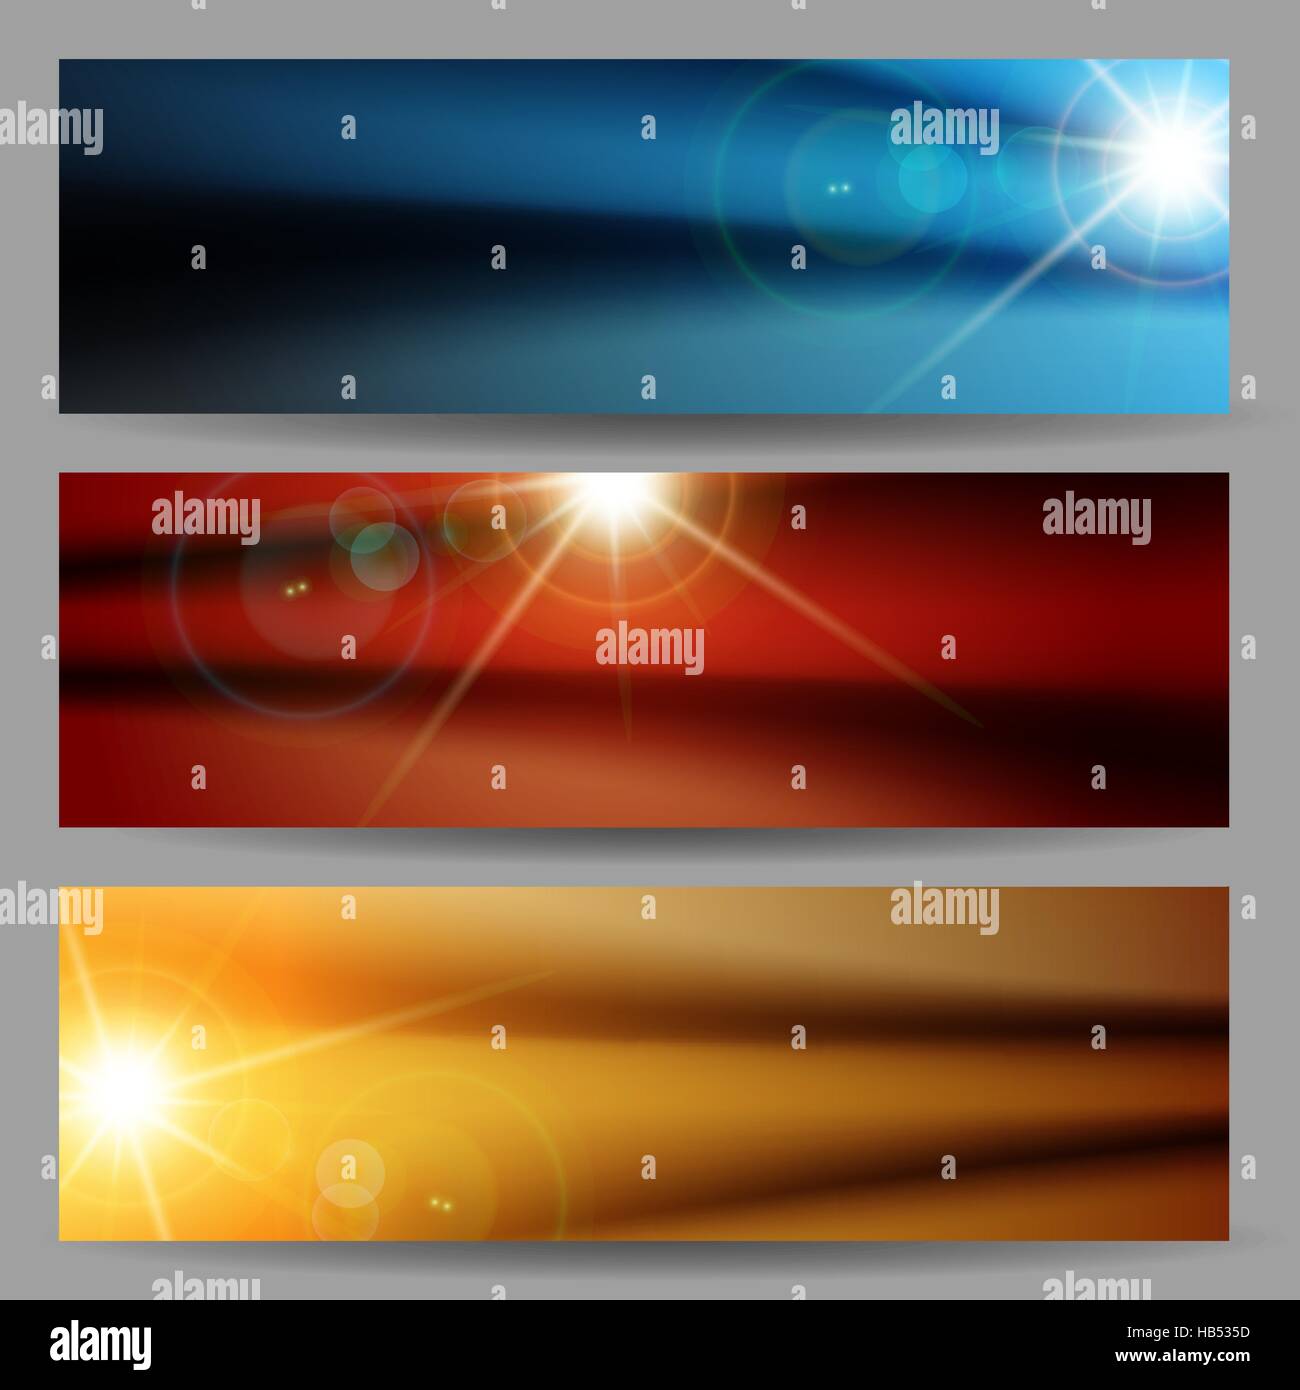 Satz von horizontalen Banner mit Flare hellen Sonne Strahlen abstrakten Hintergrund für Website-Header, banner oder Nacht party Flyer Vorlage. Vektor-illustration Stock Vektor